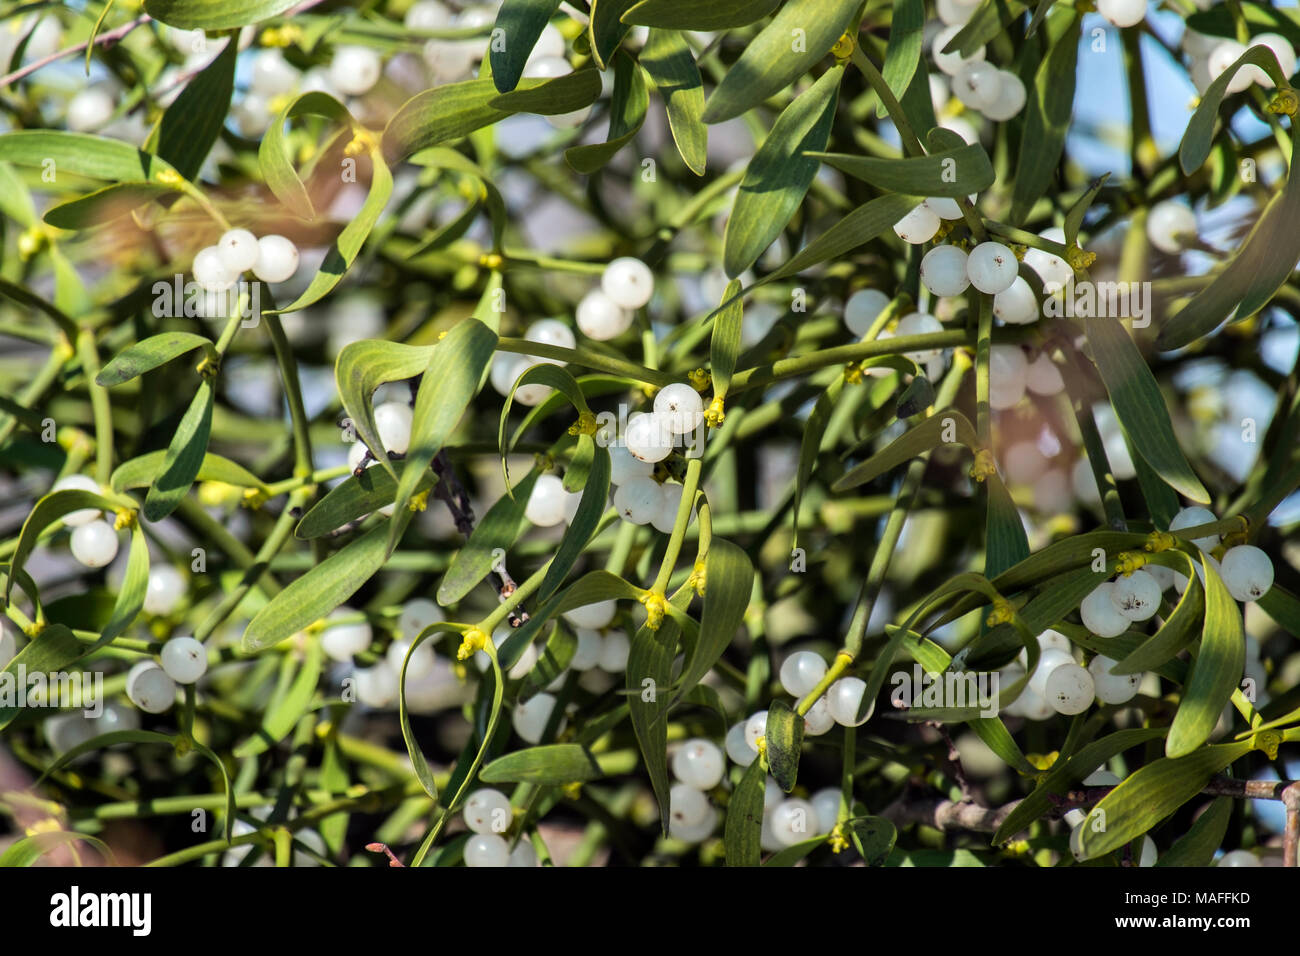 Ripe white berries of mistletoe (Viscum album) Stock Photo